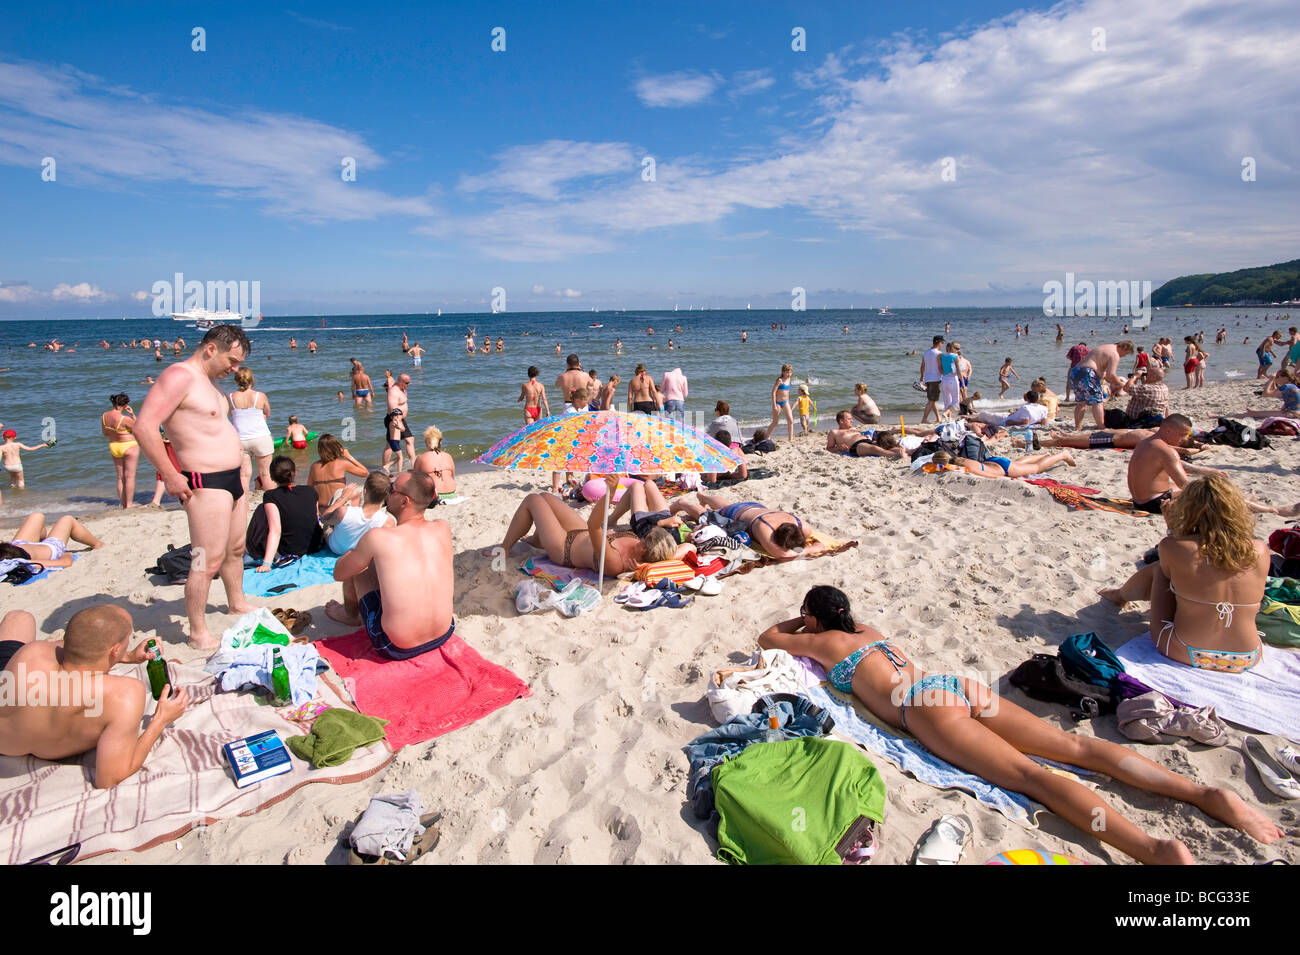 Les gens en train de bronzer sur une plage de sable fin de la mer Baltique Gdynia Pologne Banque D'Images